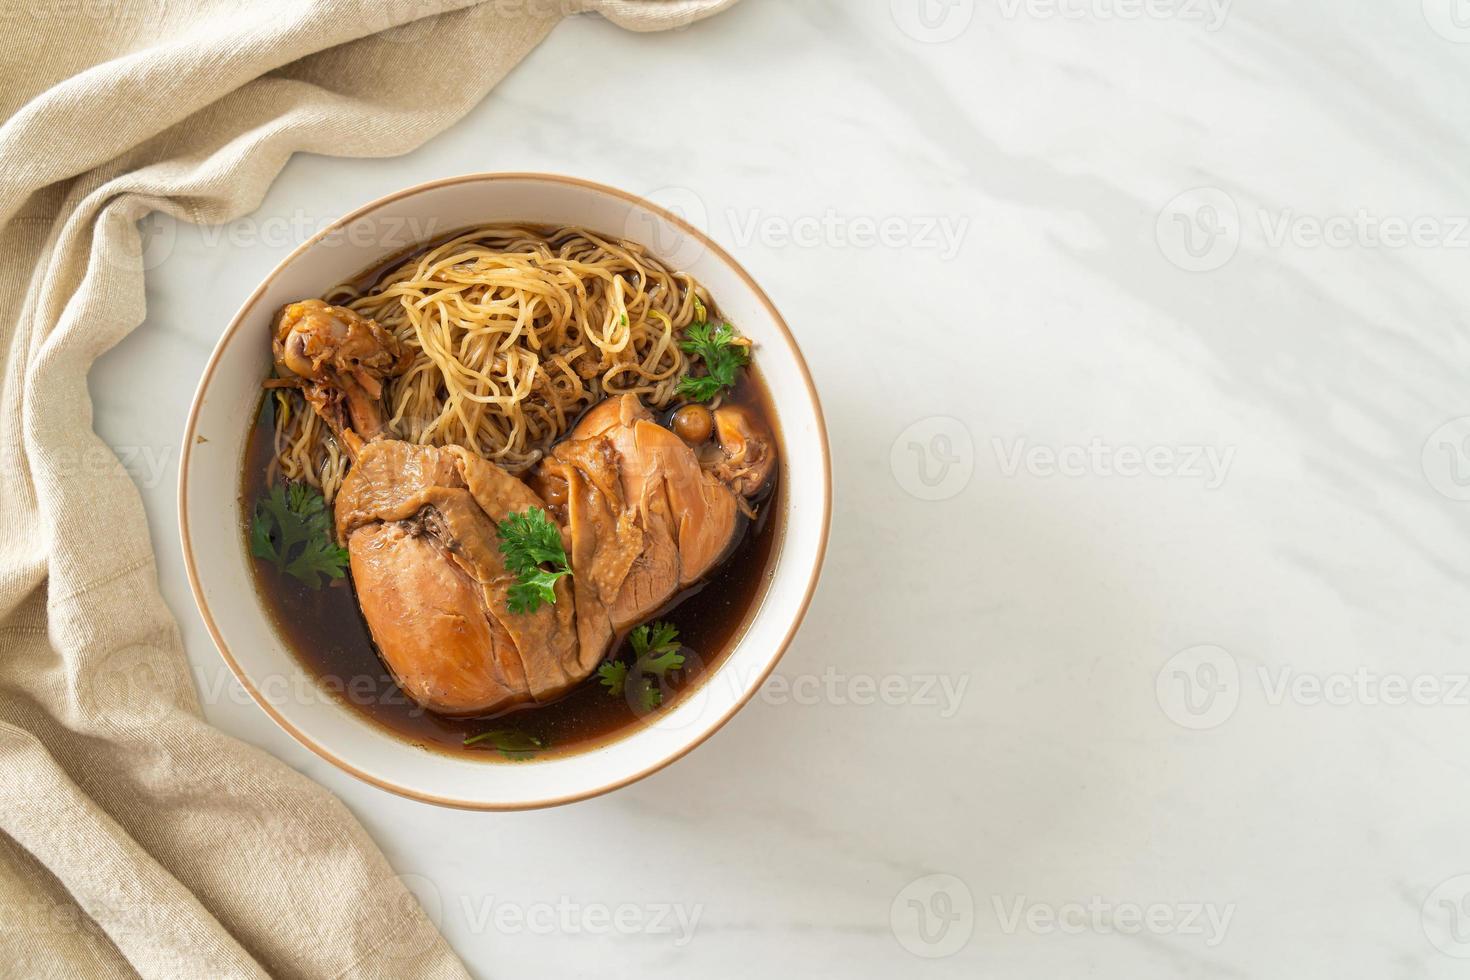 nudlar med bräserad kyckling i brun soppa foto